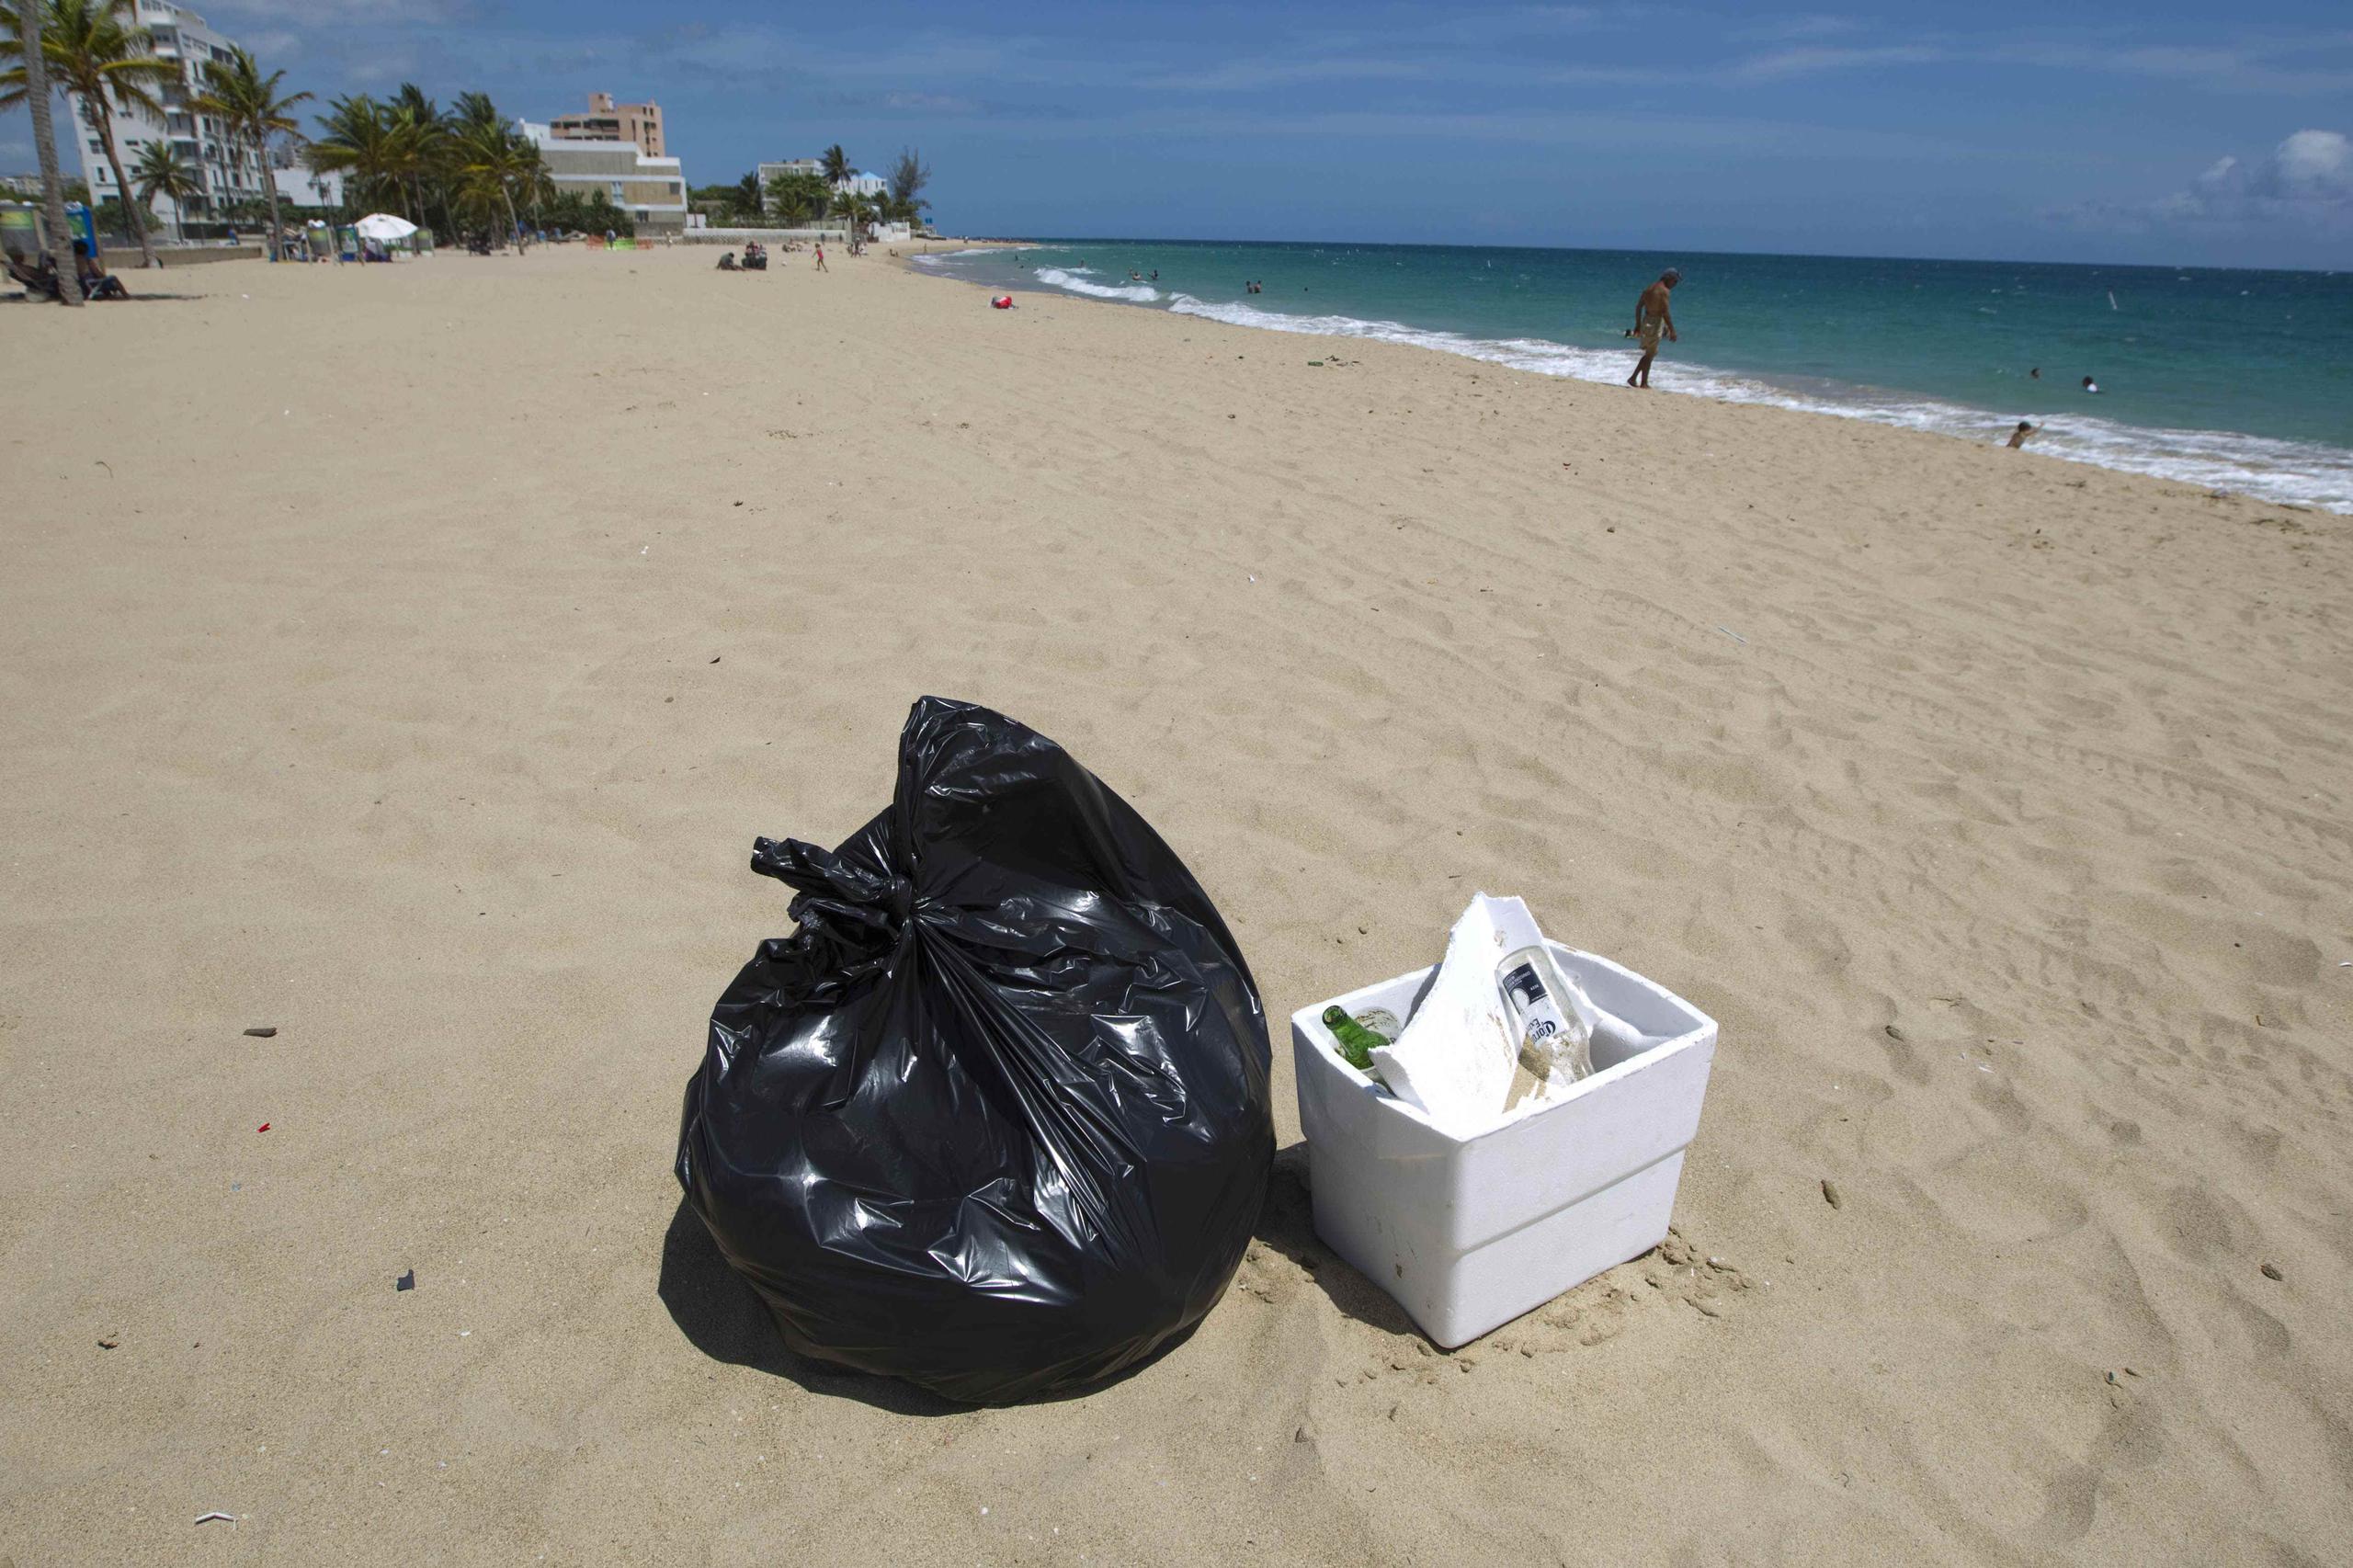 La medida propone multas de $250 a quienes las dejen las neveritas de "foam" abandonadas por descuido o intencionalmente en playas o cerca de cuerpos de agua. (GFR Media)